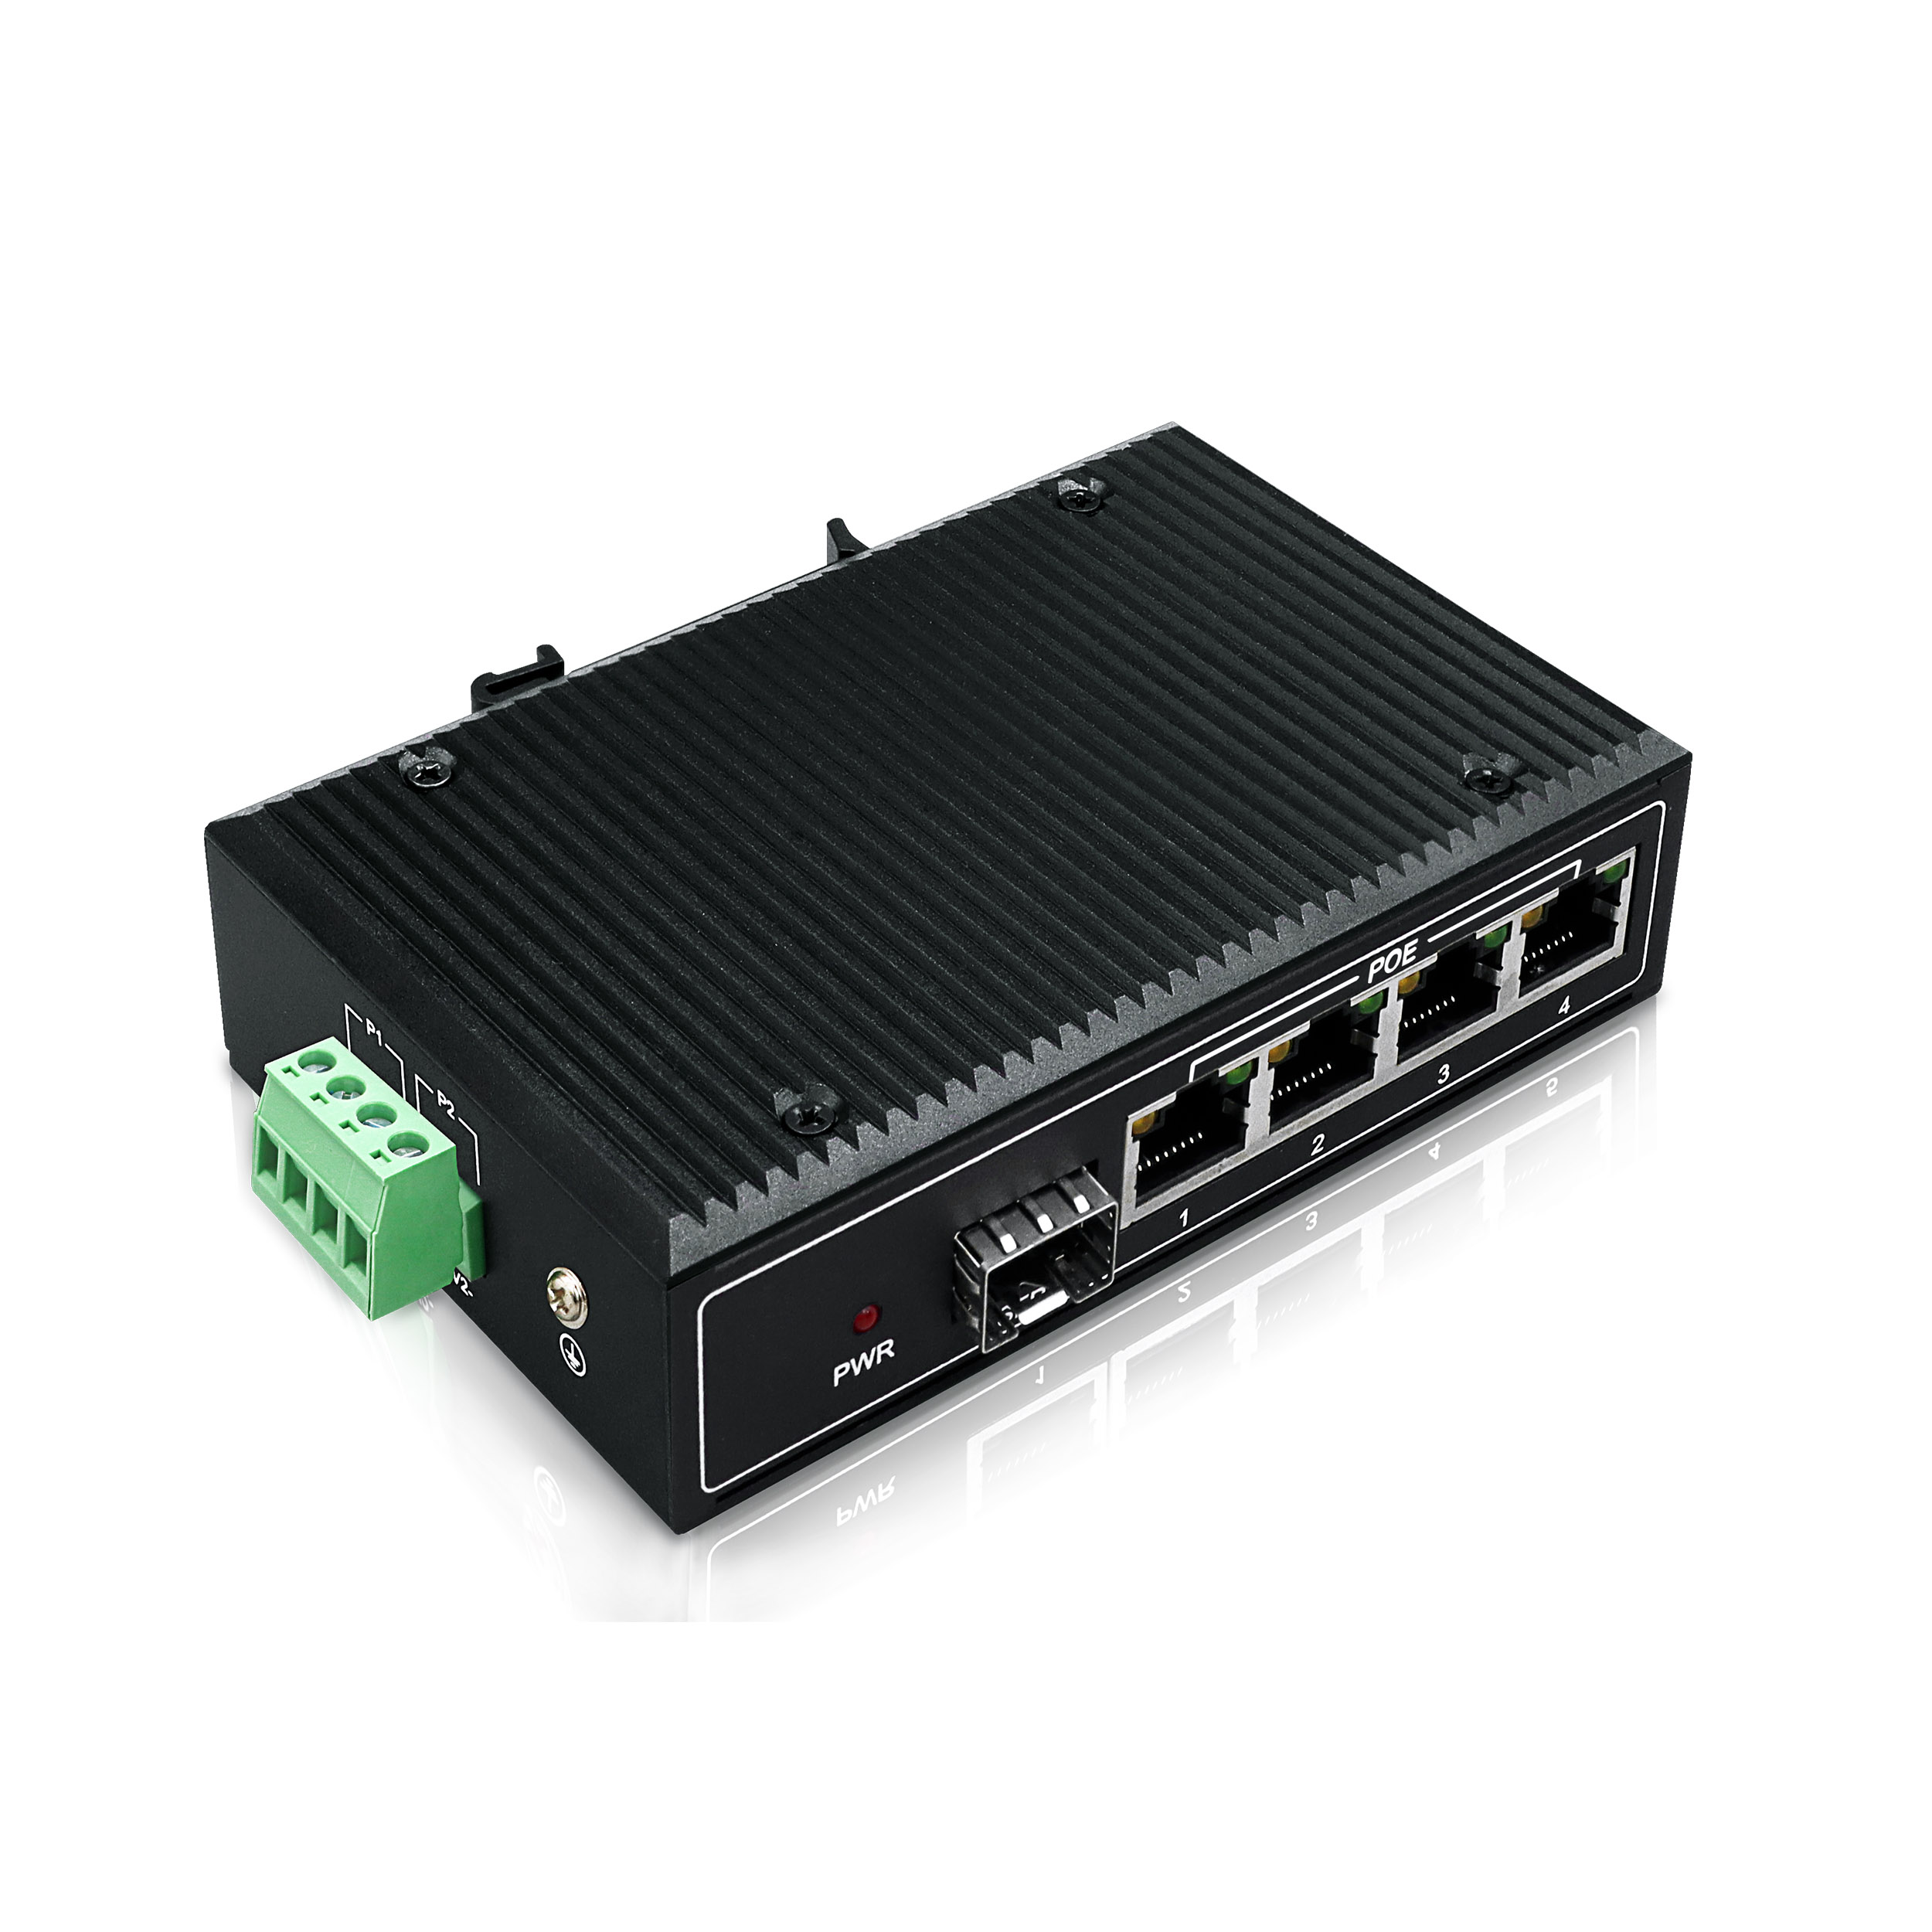 YN-SF105SP Industrial Ethernet PoE Switch